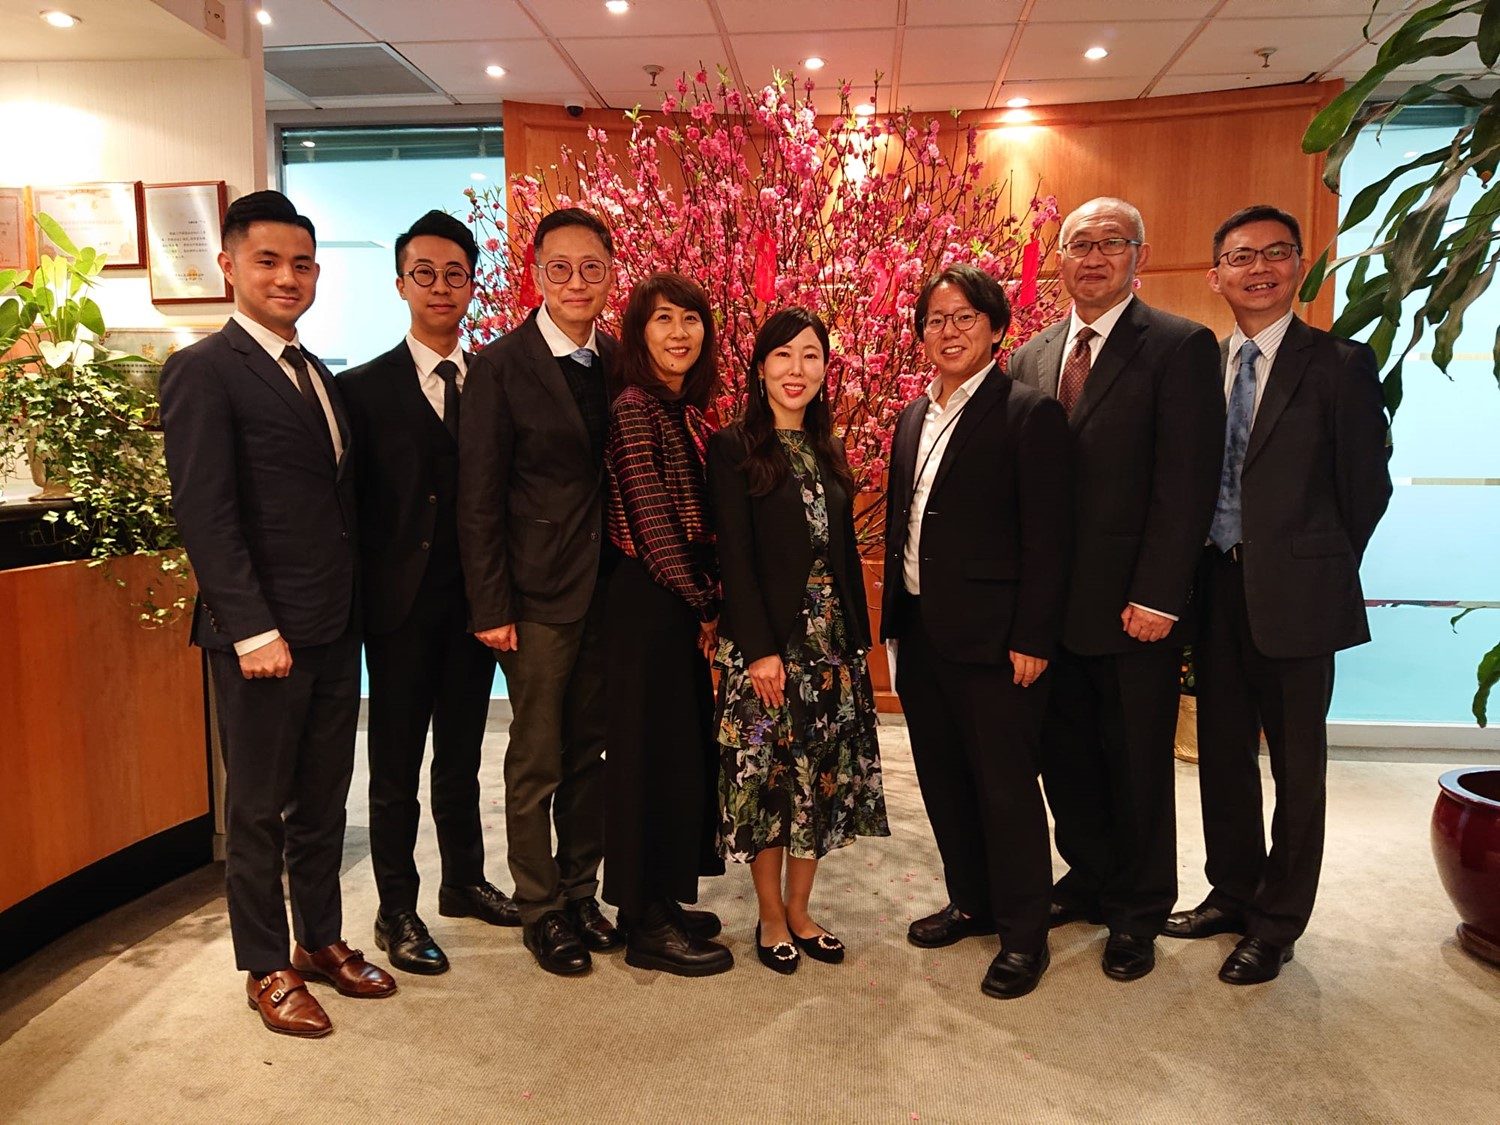 日本的GI & T Law Office律师事务所的合伙人代表西垣建刚先生率领一支律师团队到访本行